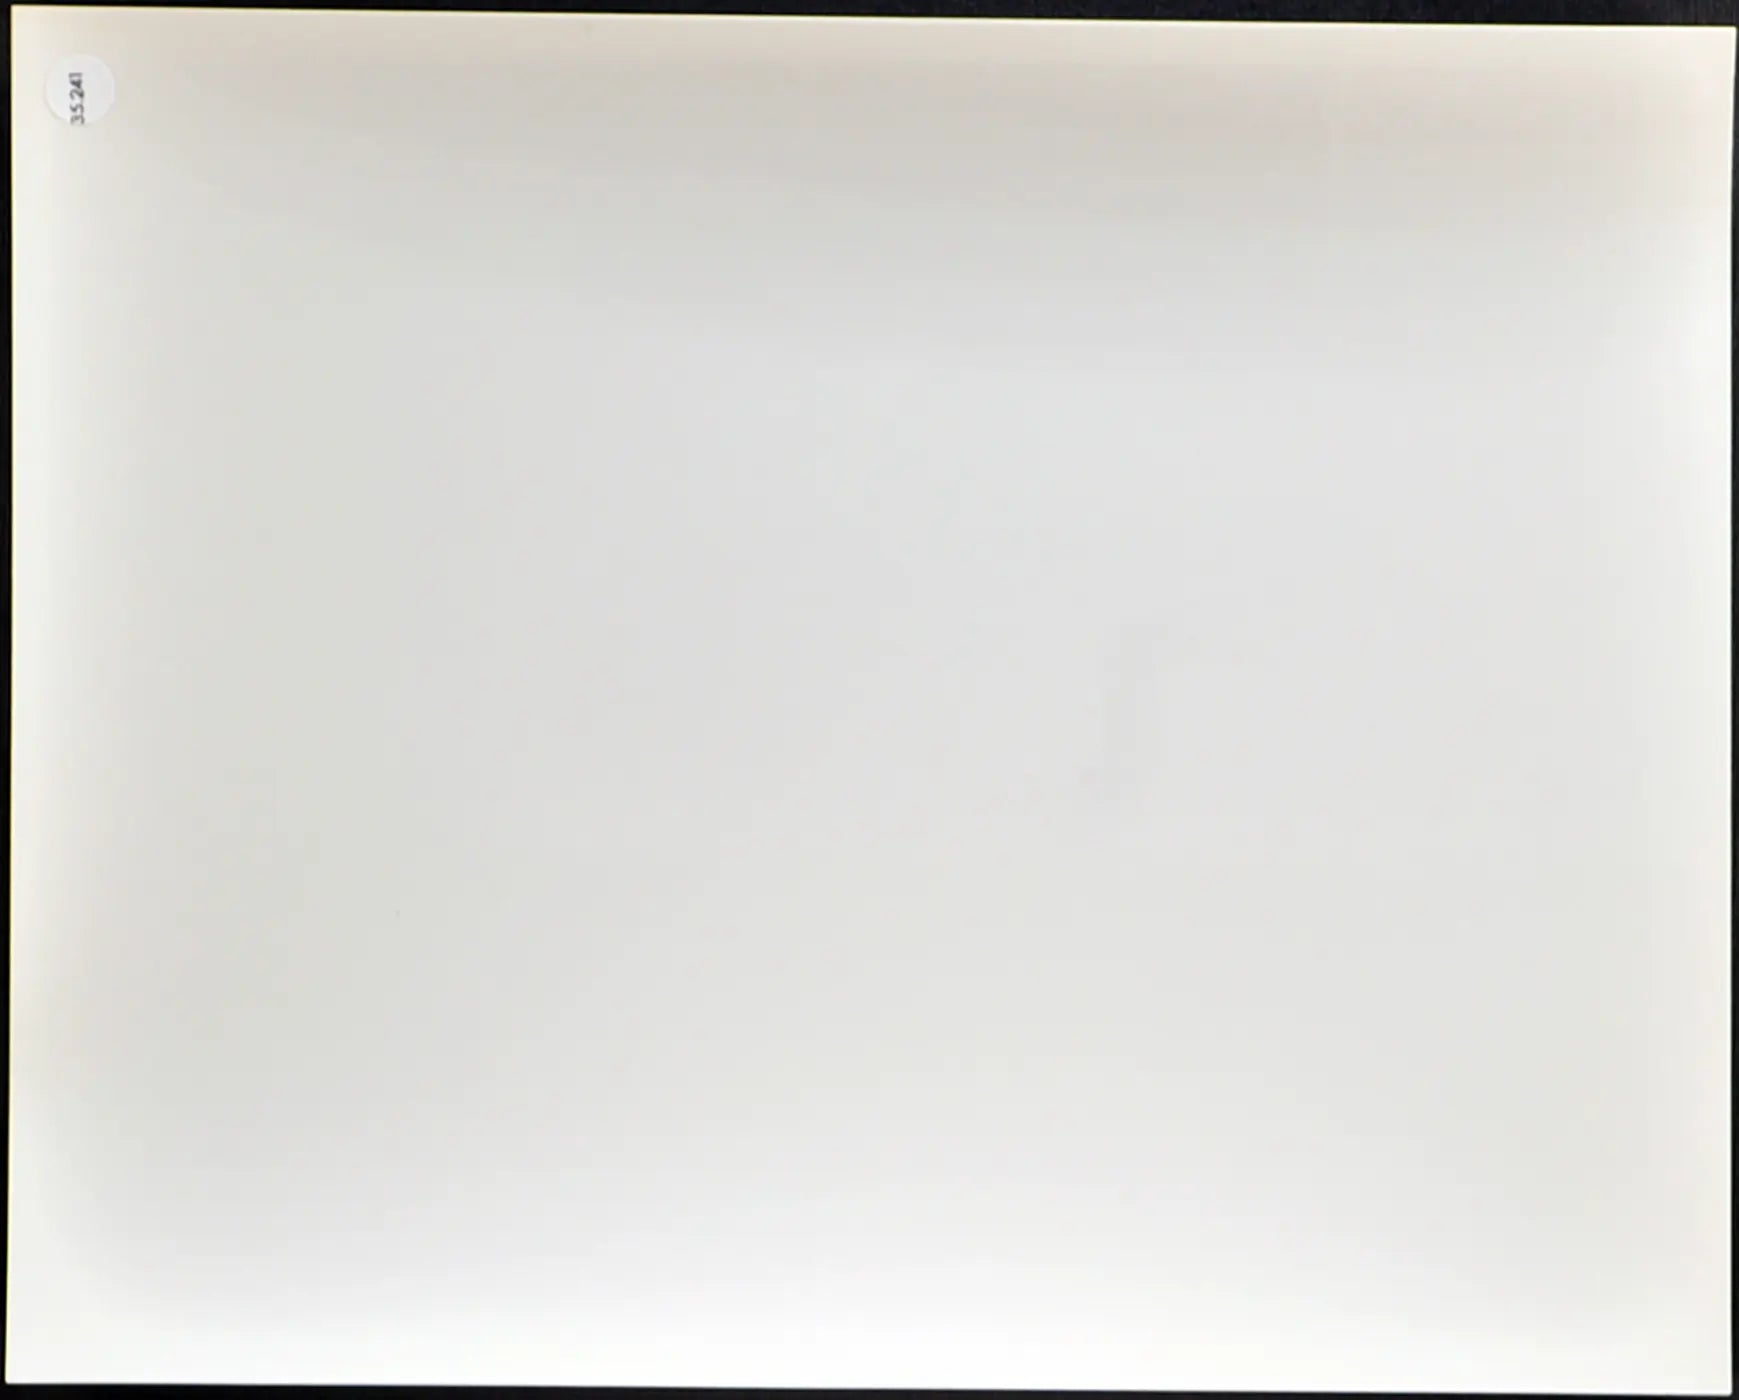 Stallone Film Fuga per la vittoria 1981 Ft 35241 - Stampa 20x25 cm - Farabola Stampa ai sali d'argento